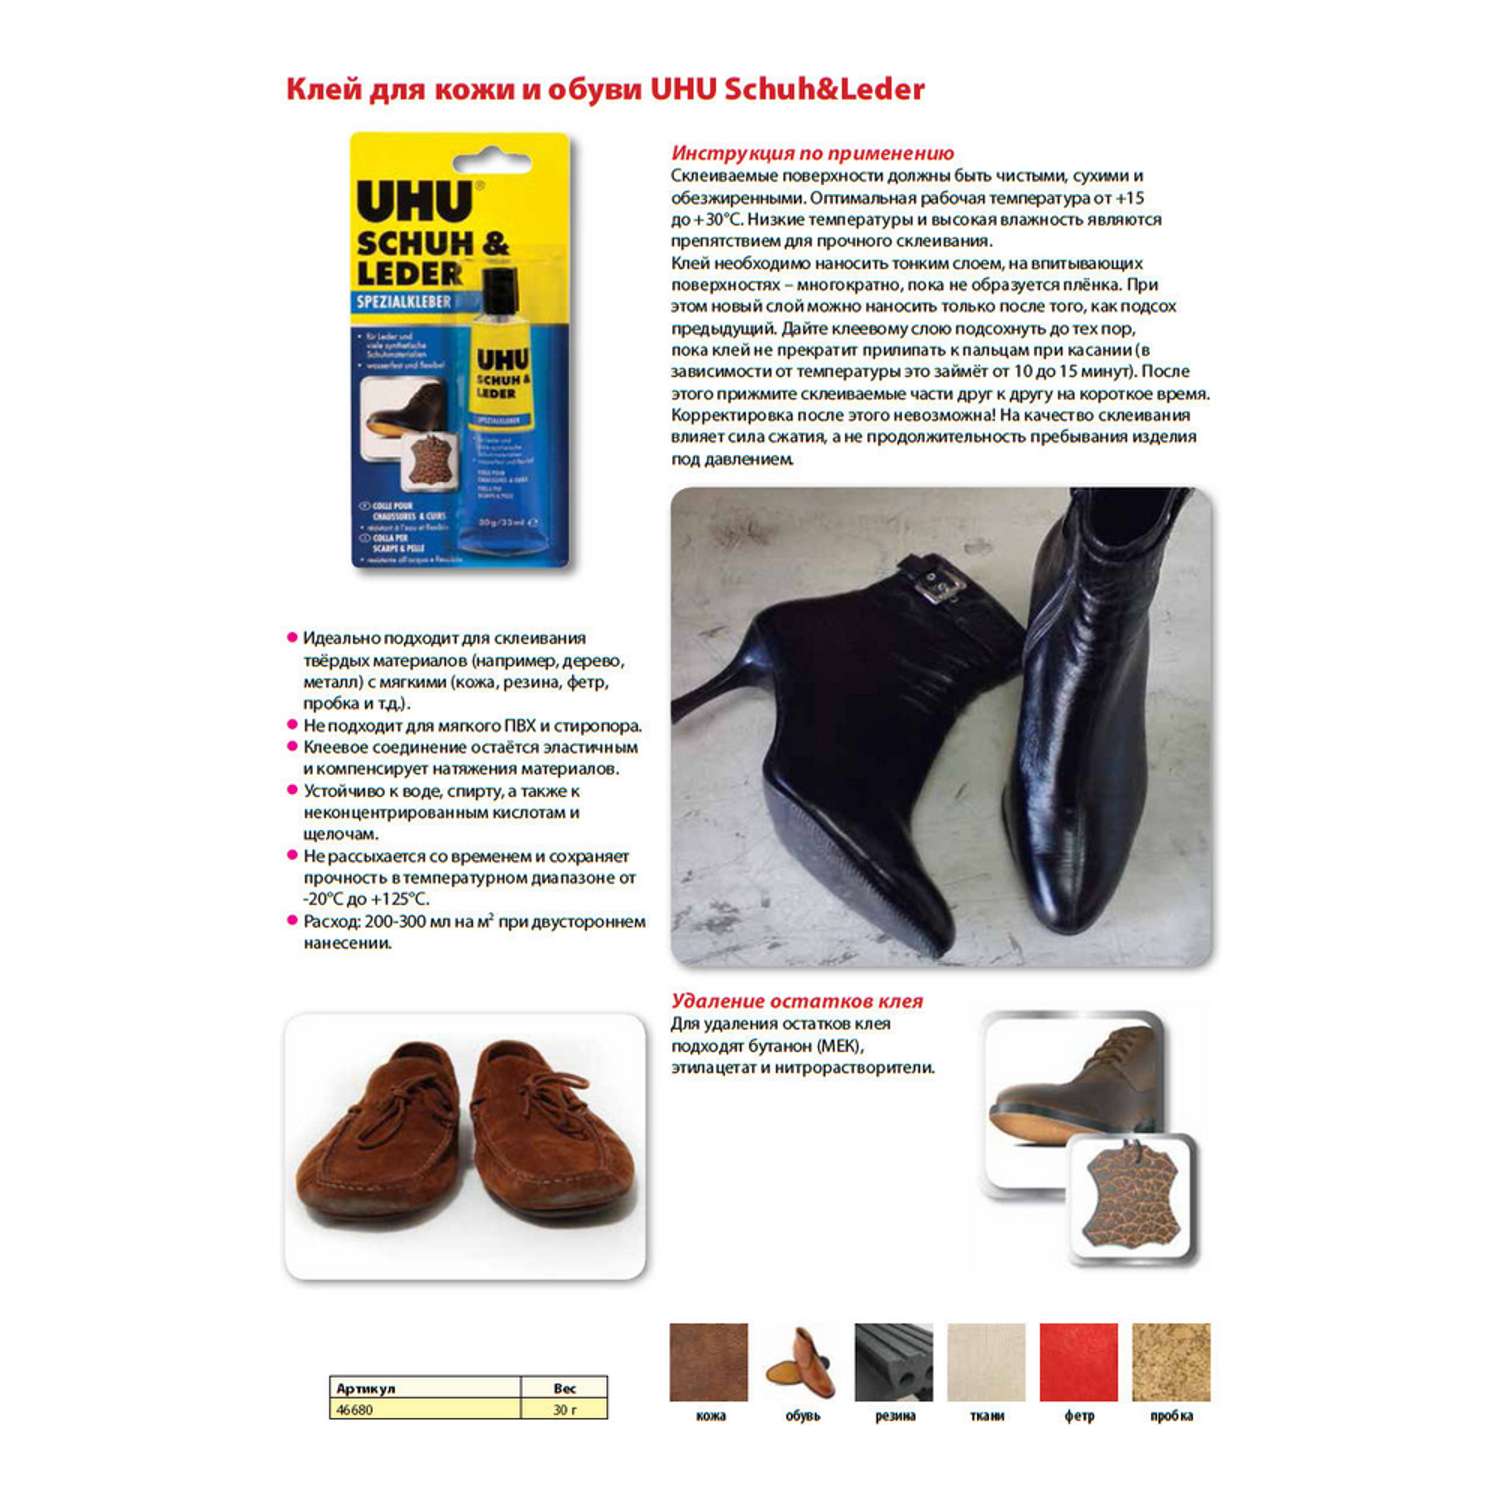 Клей UHU для ремонта изделий из кожи и обуви 30гр. Schuh and Leder 46680 - фото 3